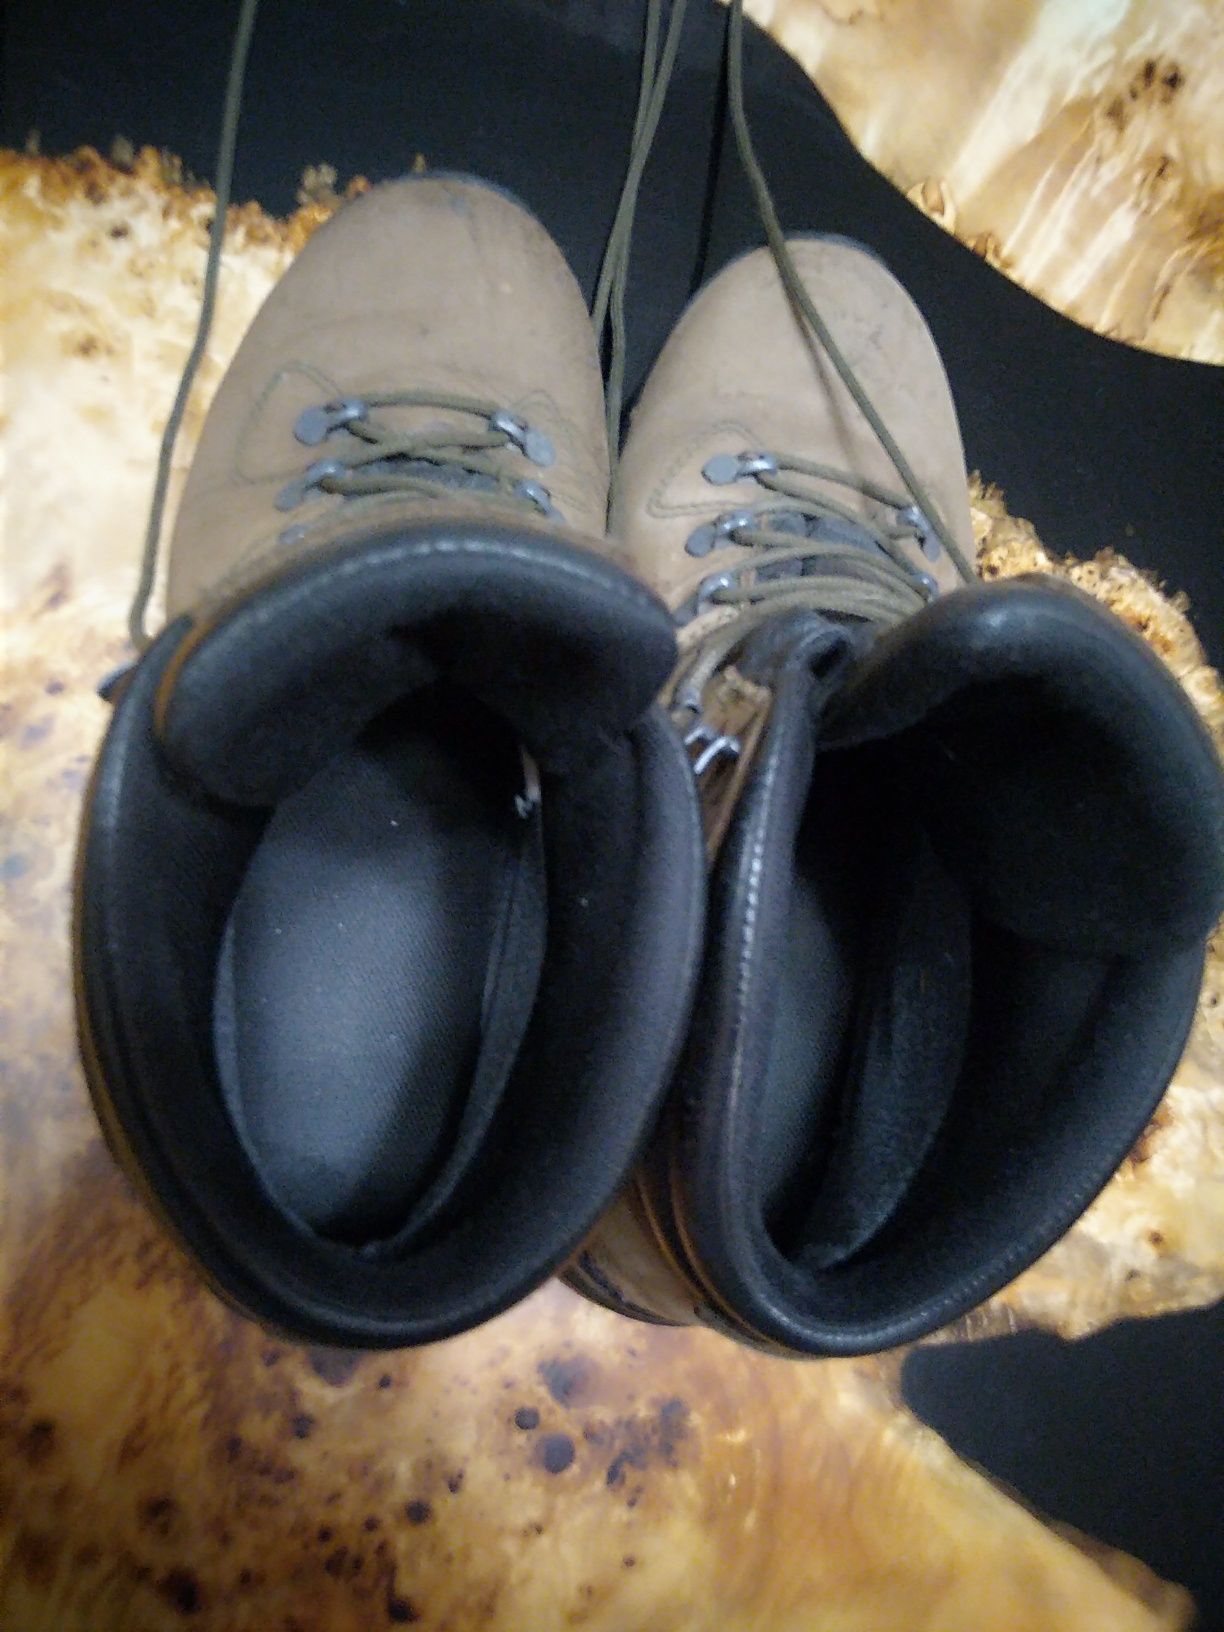 Трекинговая Обувь мужская для похода,неубиваемая, срочно, терміново